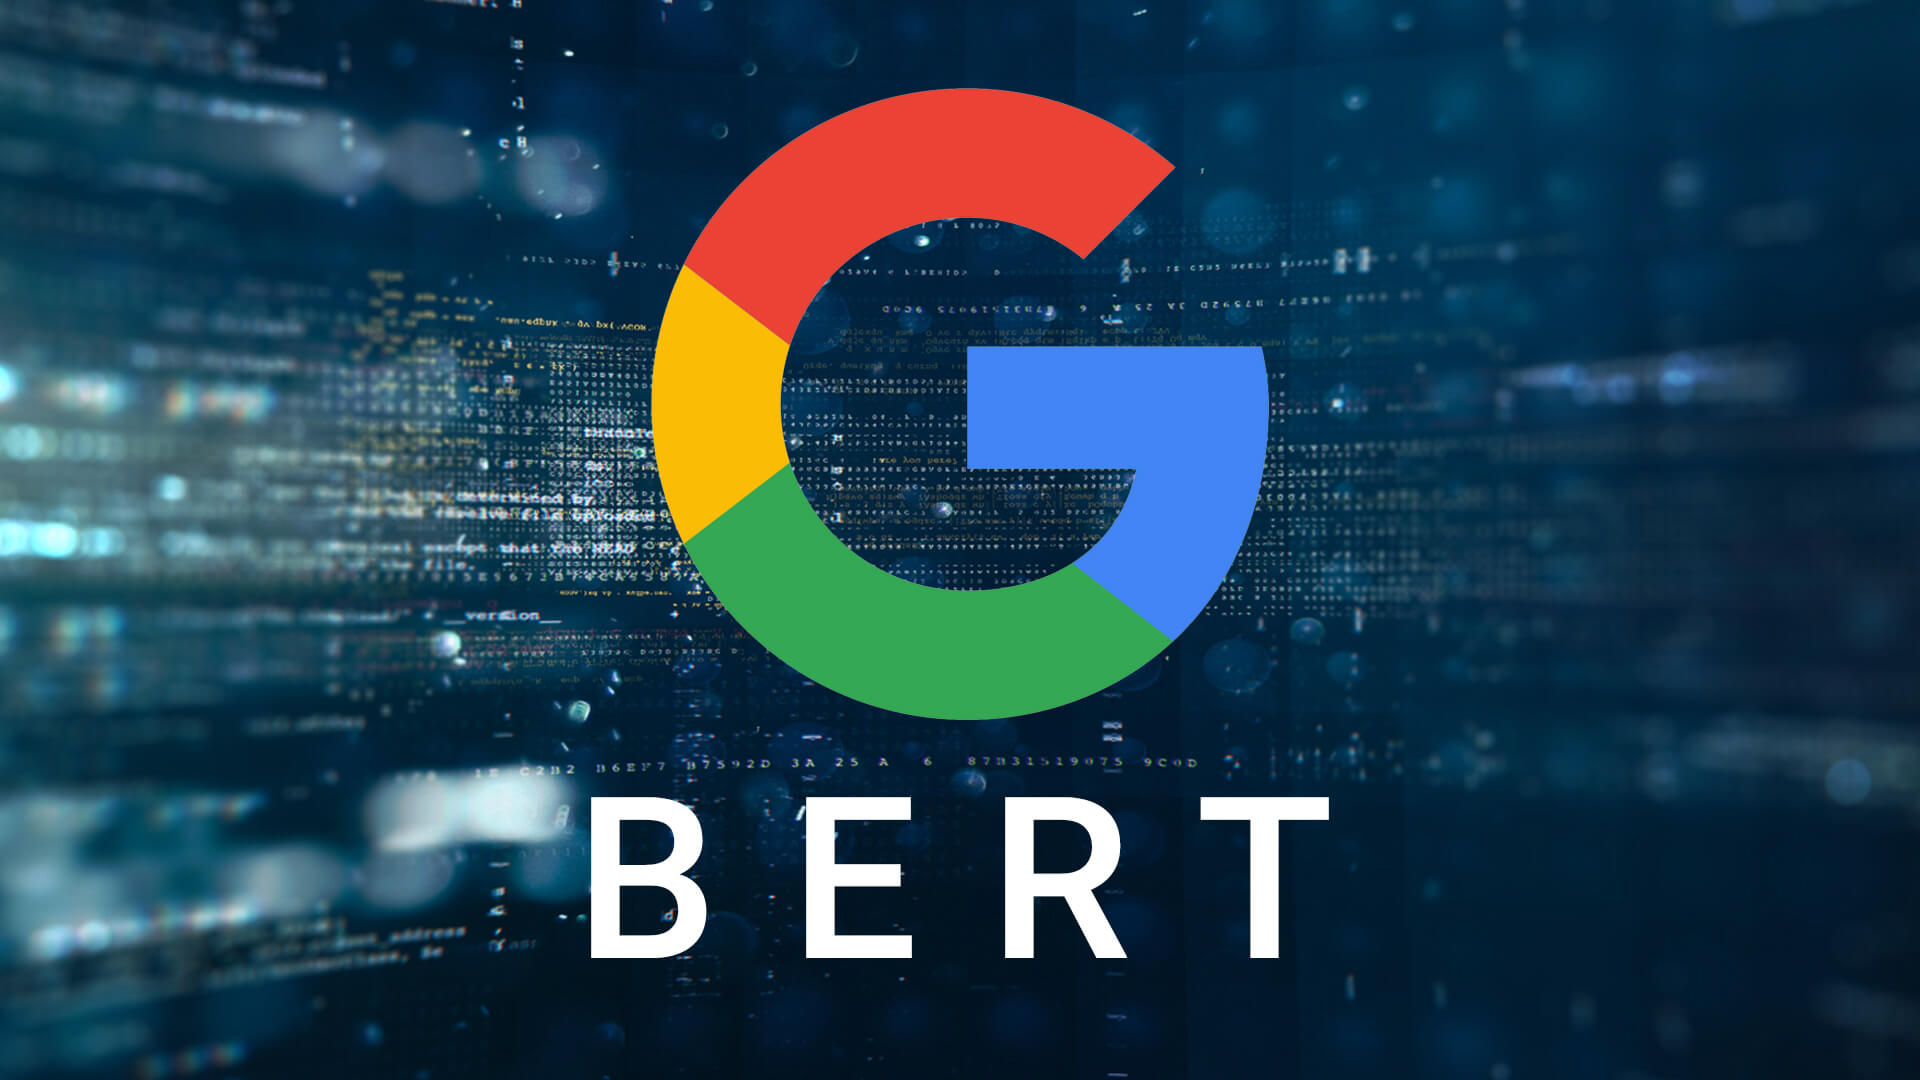 Google BERT - What is it?